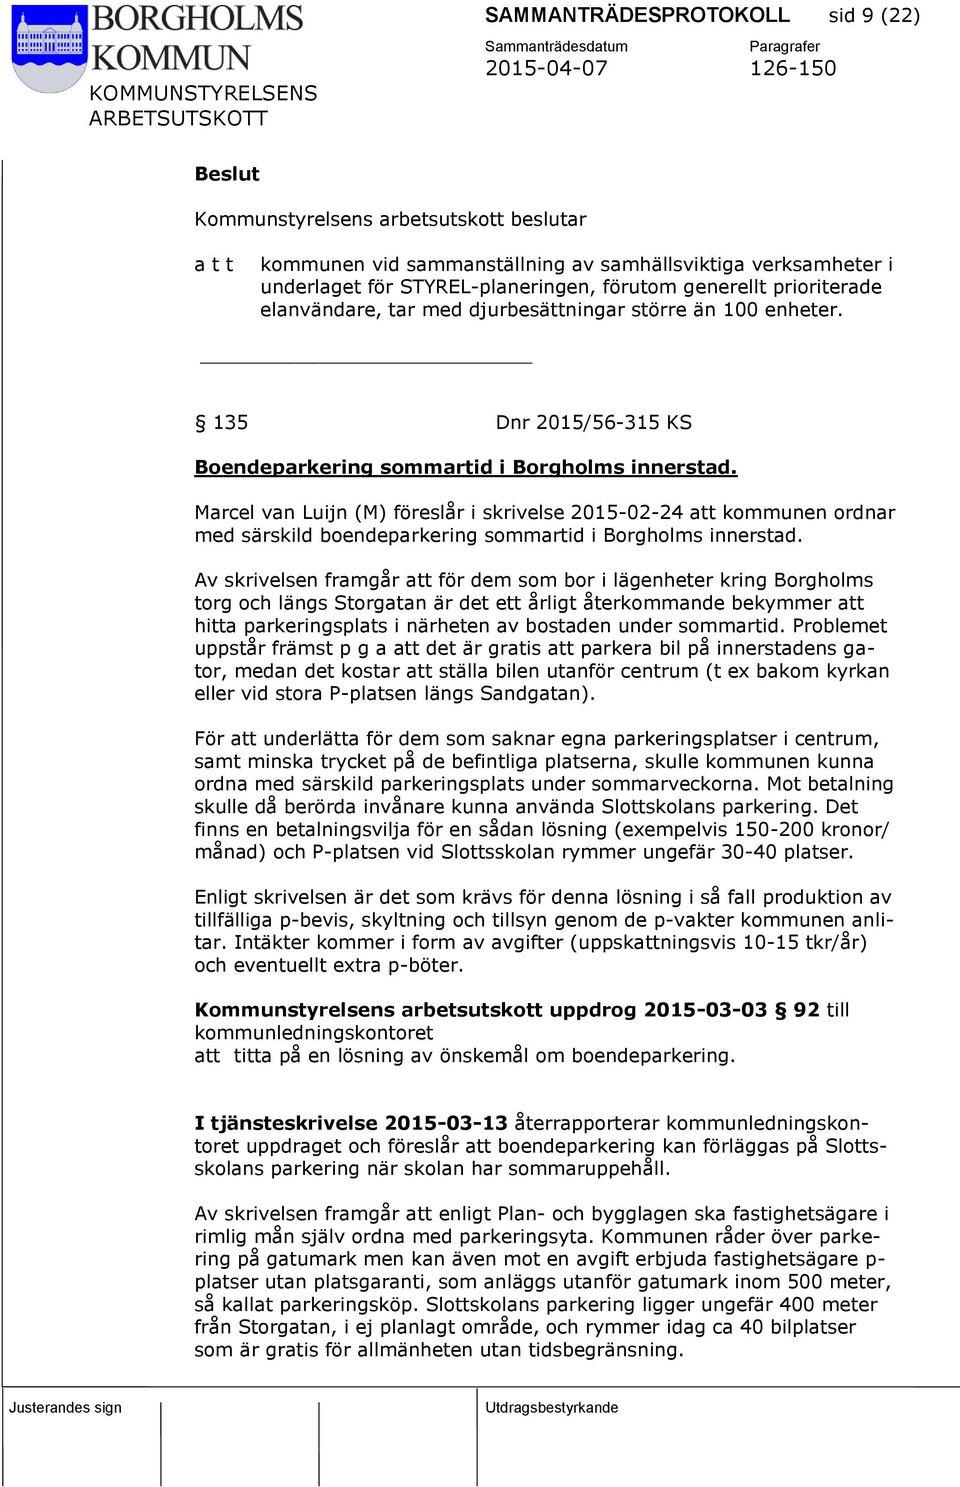 Marcel van Luijn (M) föreslår i skrivelse 2015-02-24 att kommunen ordnar med särskild boendeparkering sommartid i Borgholms innerstad.